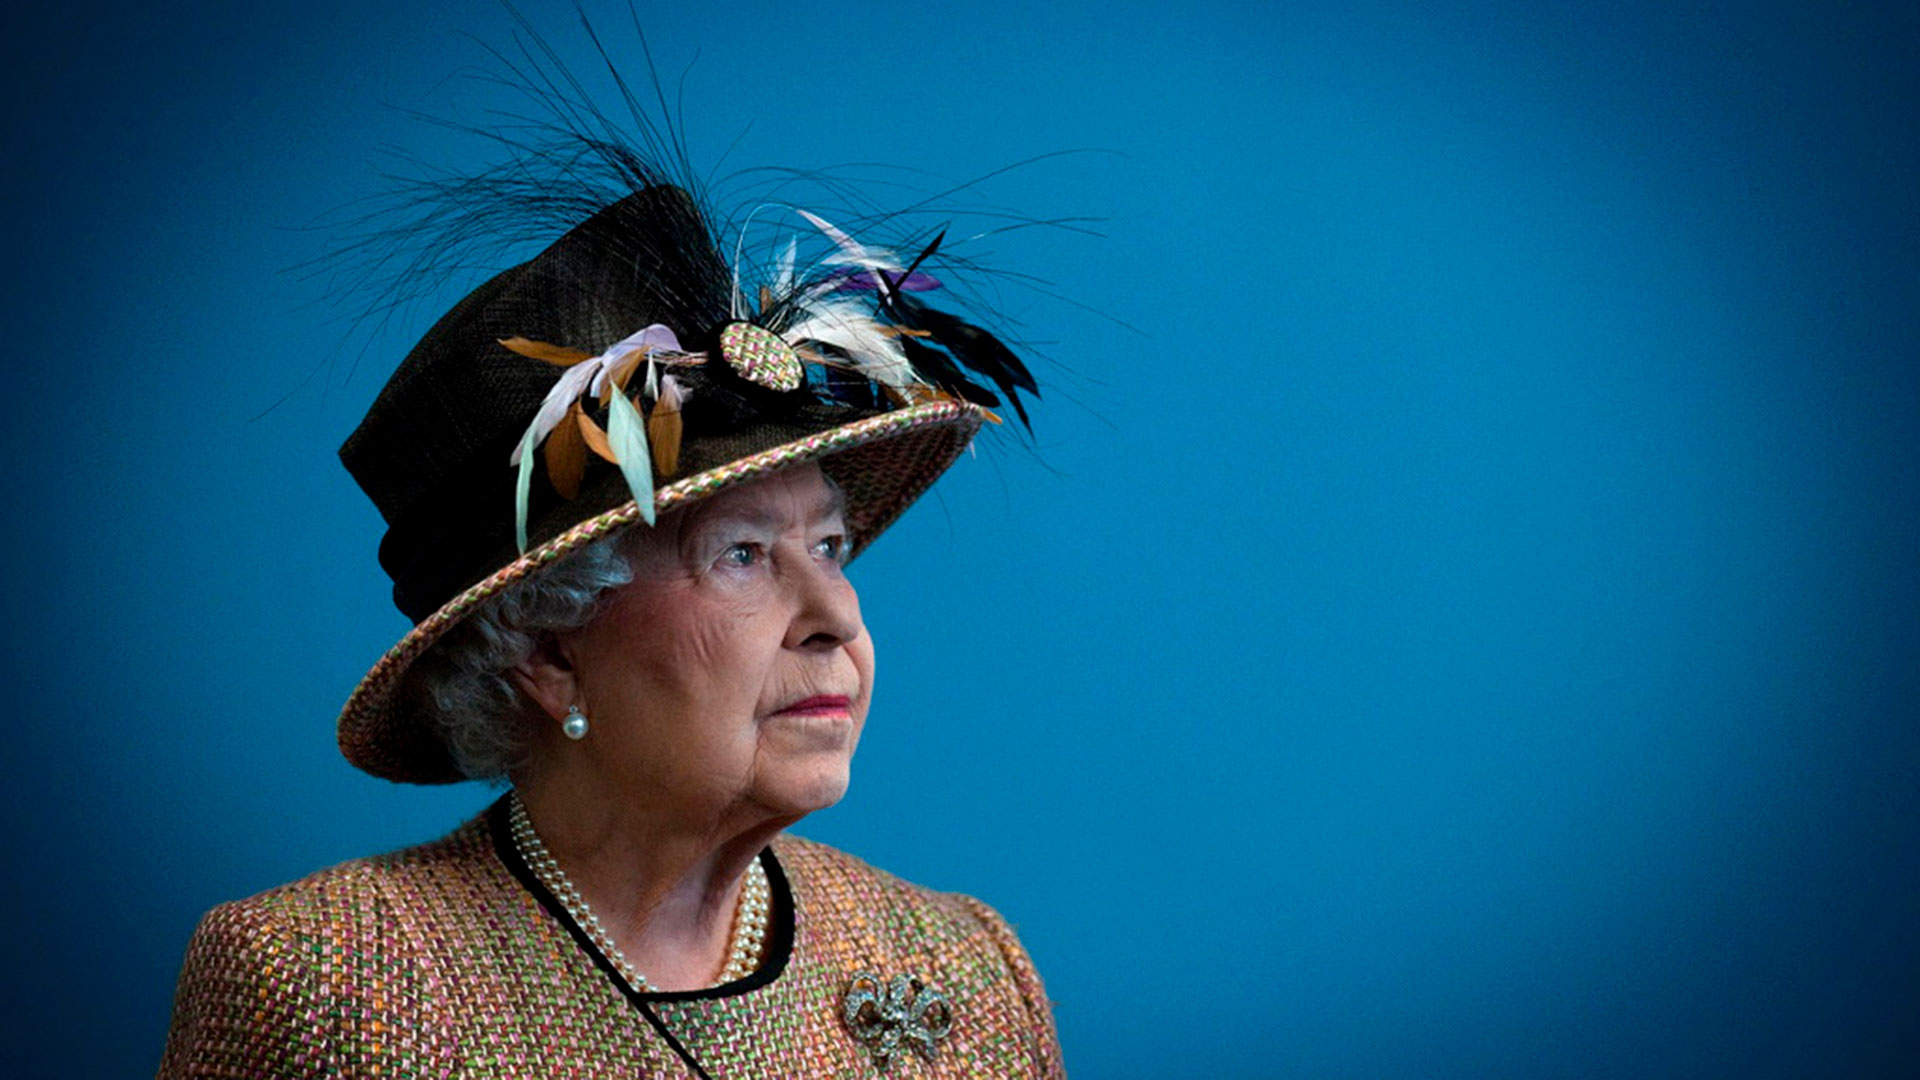 Murió la reina Isabel II: cuatro documentales para conocer su legado político y vida familiar